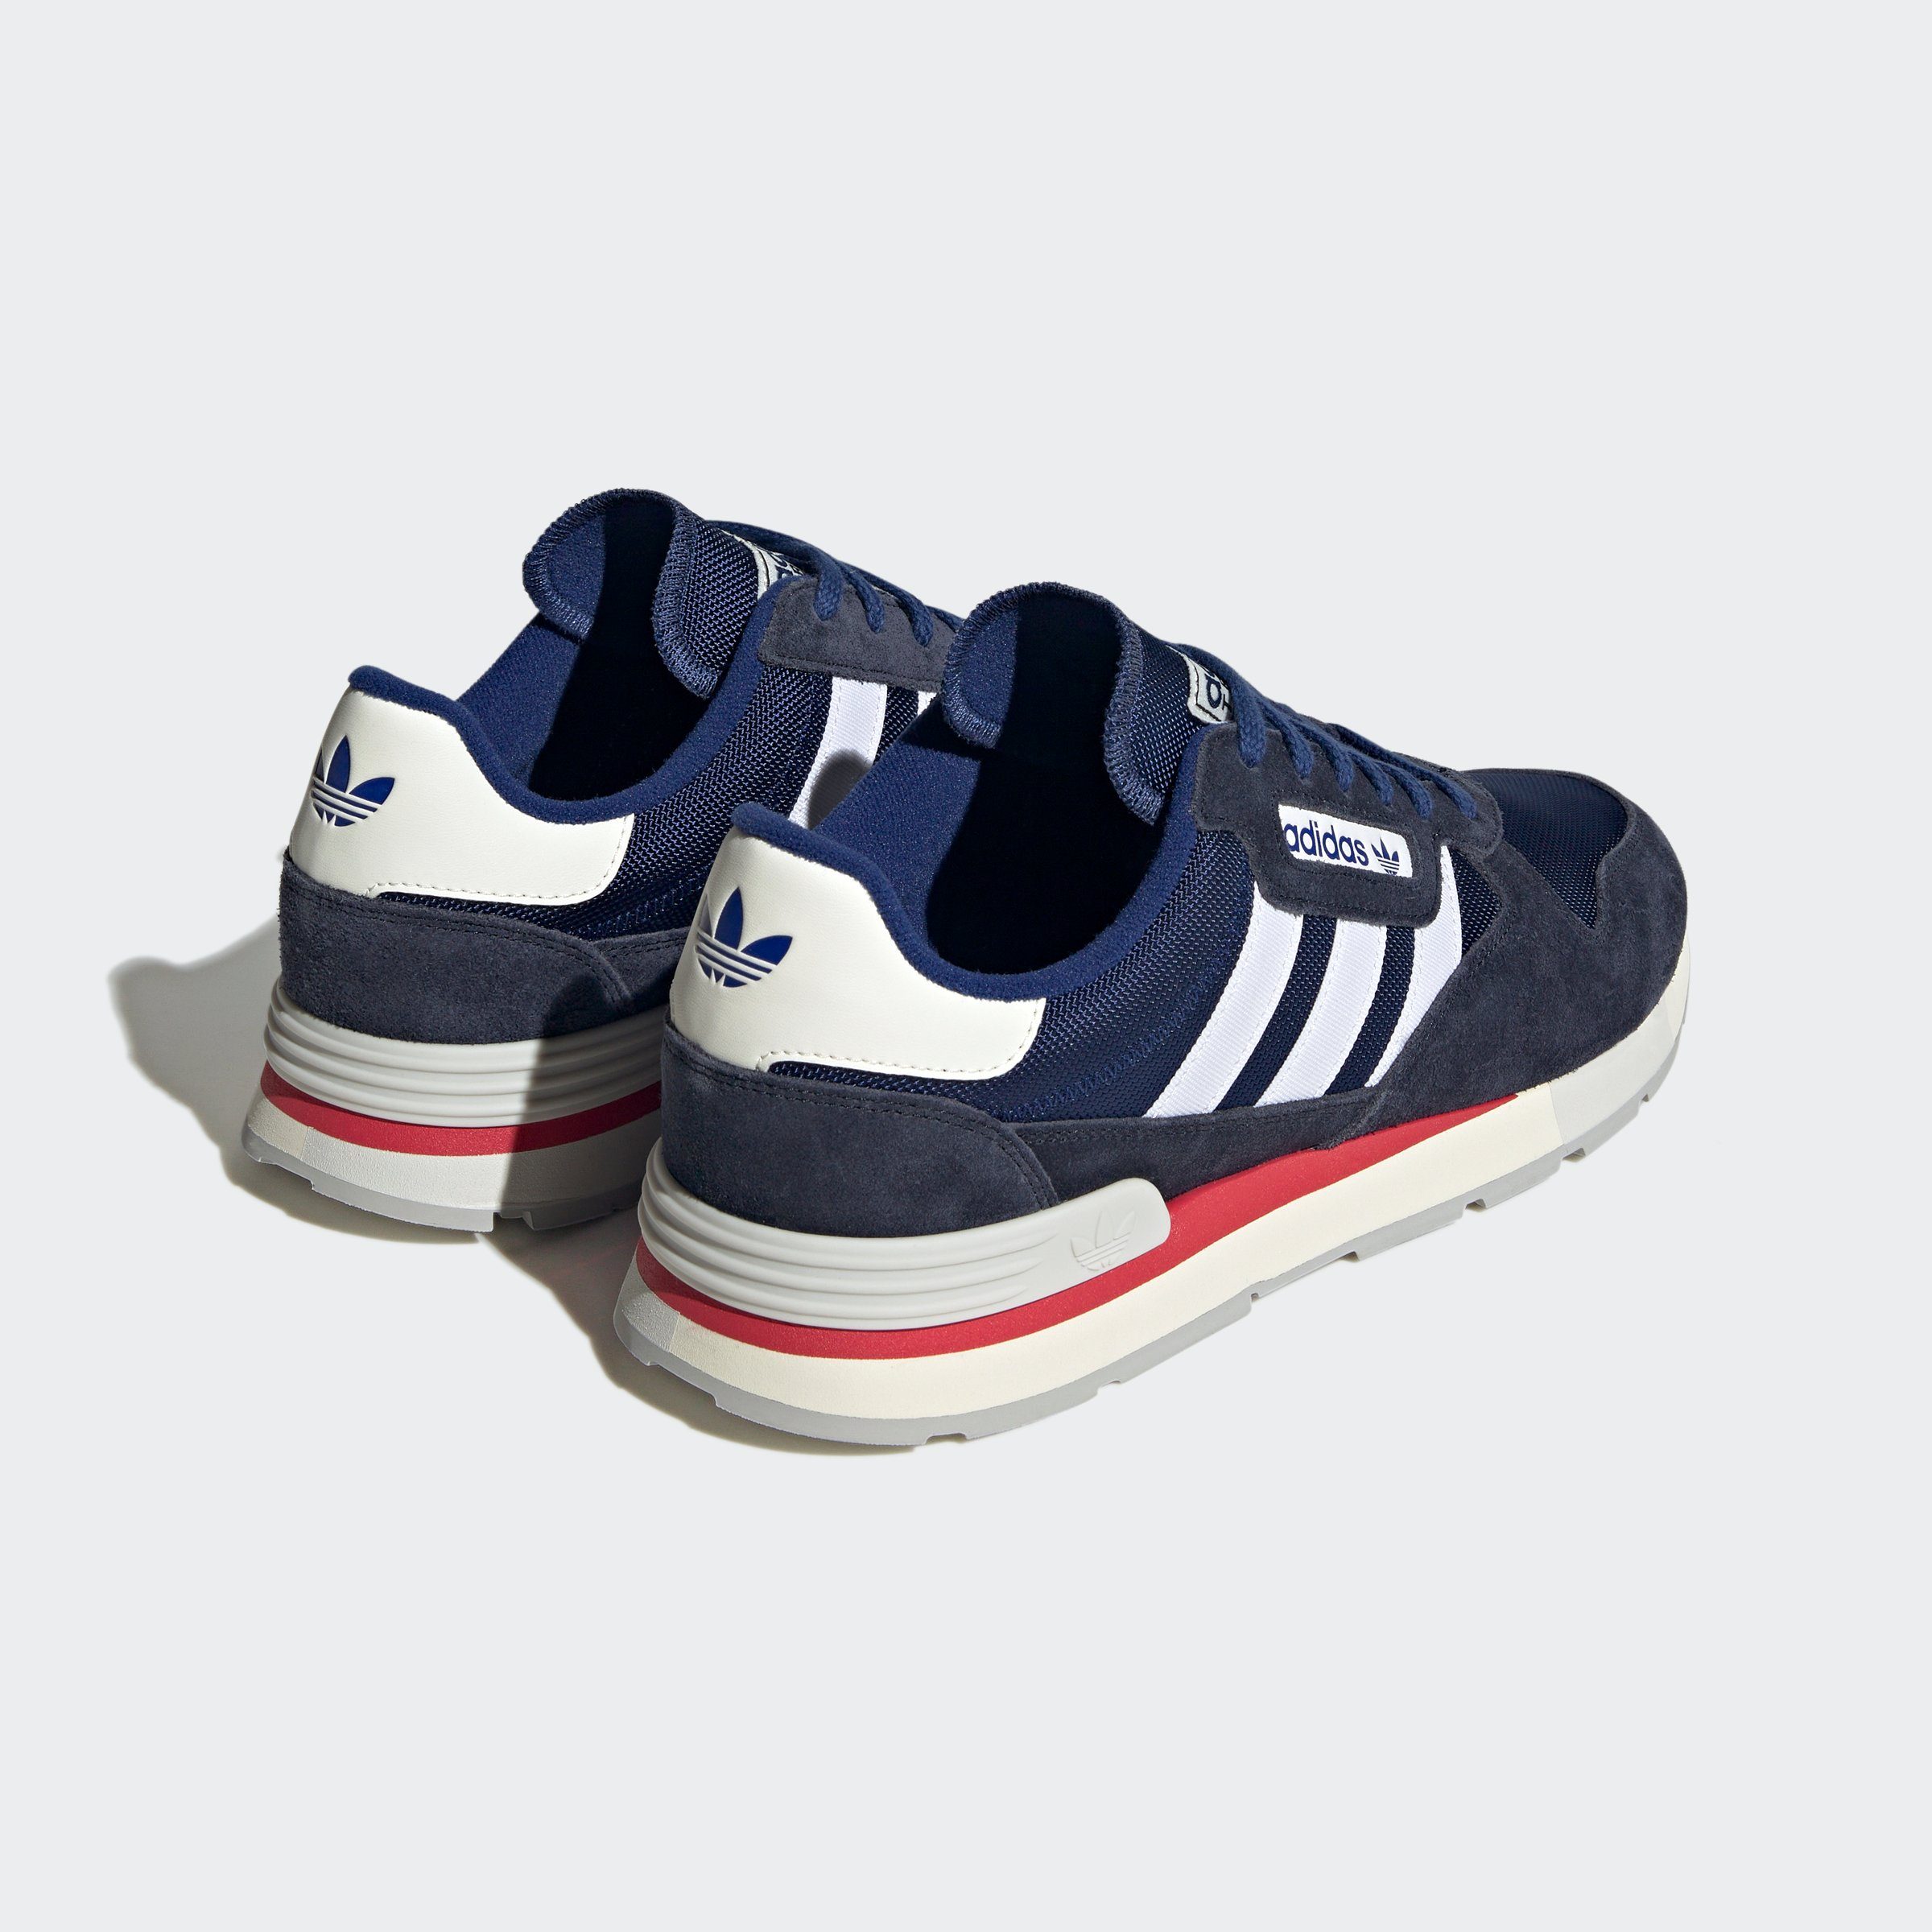 Sneaker blauweissblau TREZIOD adidas Originals 2